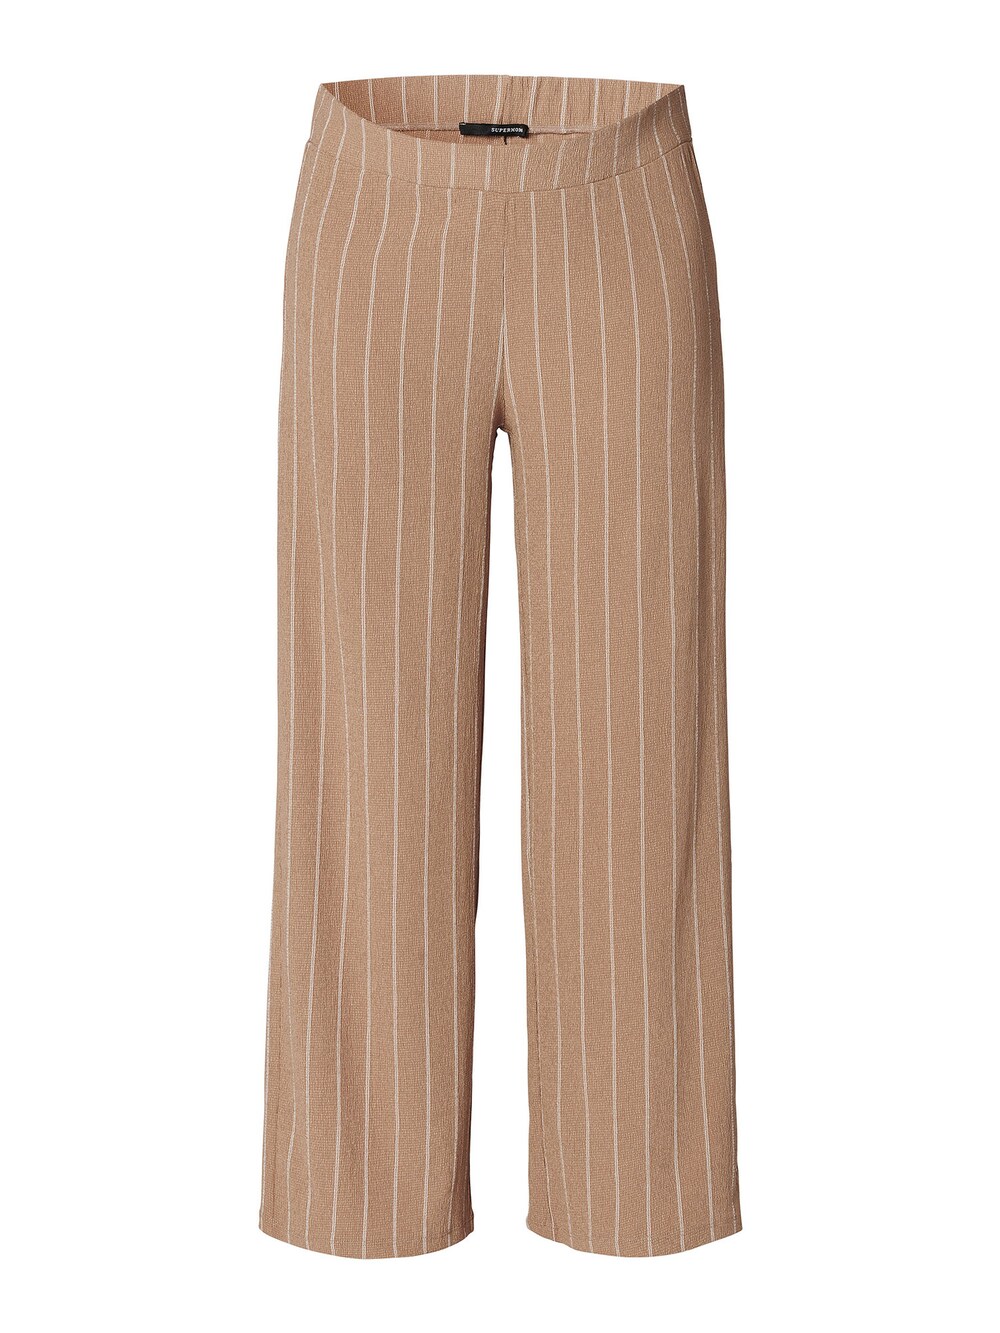 Широкие брюки Supermom Stripe, коричневый